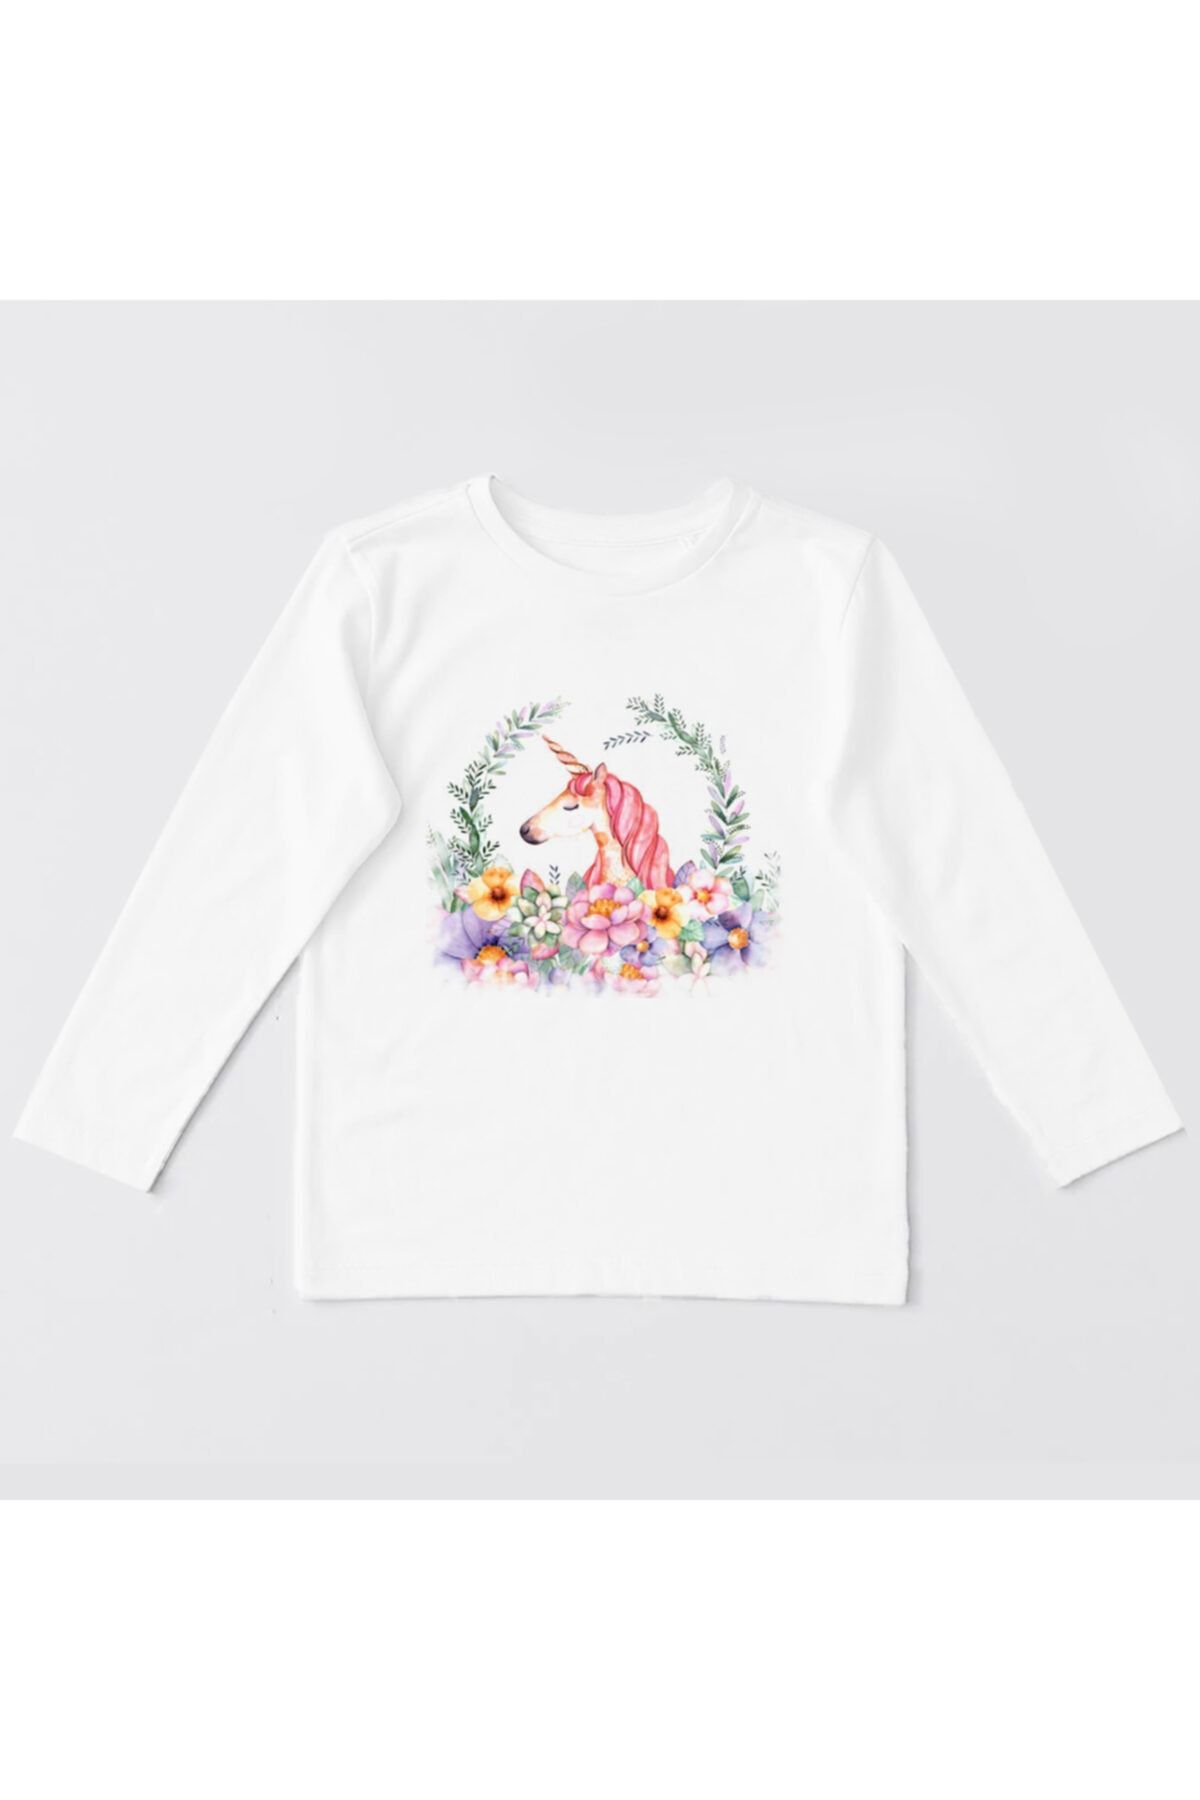 Coutoo Unicorn Çocuk Baskılı Uzun Kollu T-shirt Sweatshirt-03